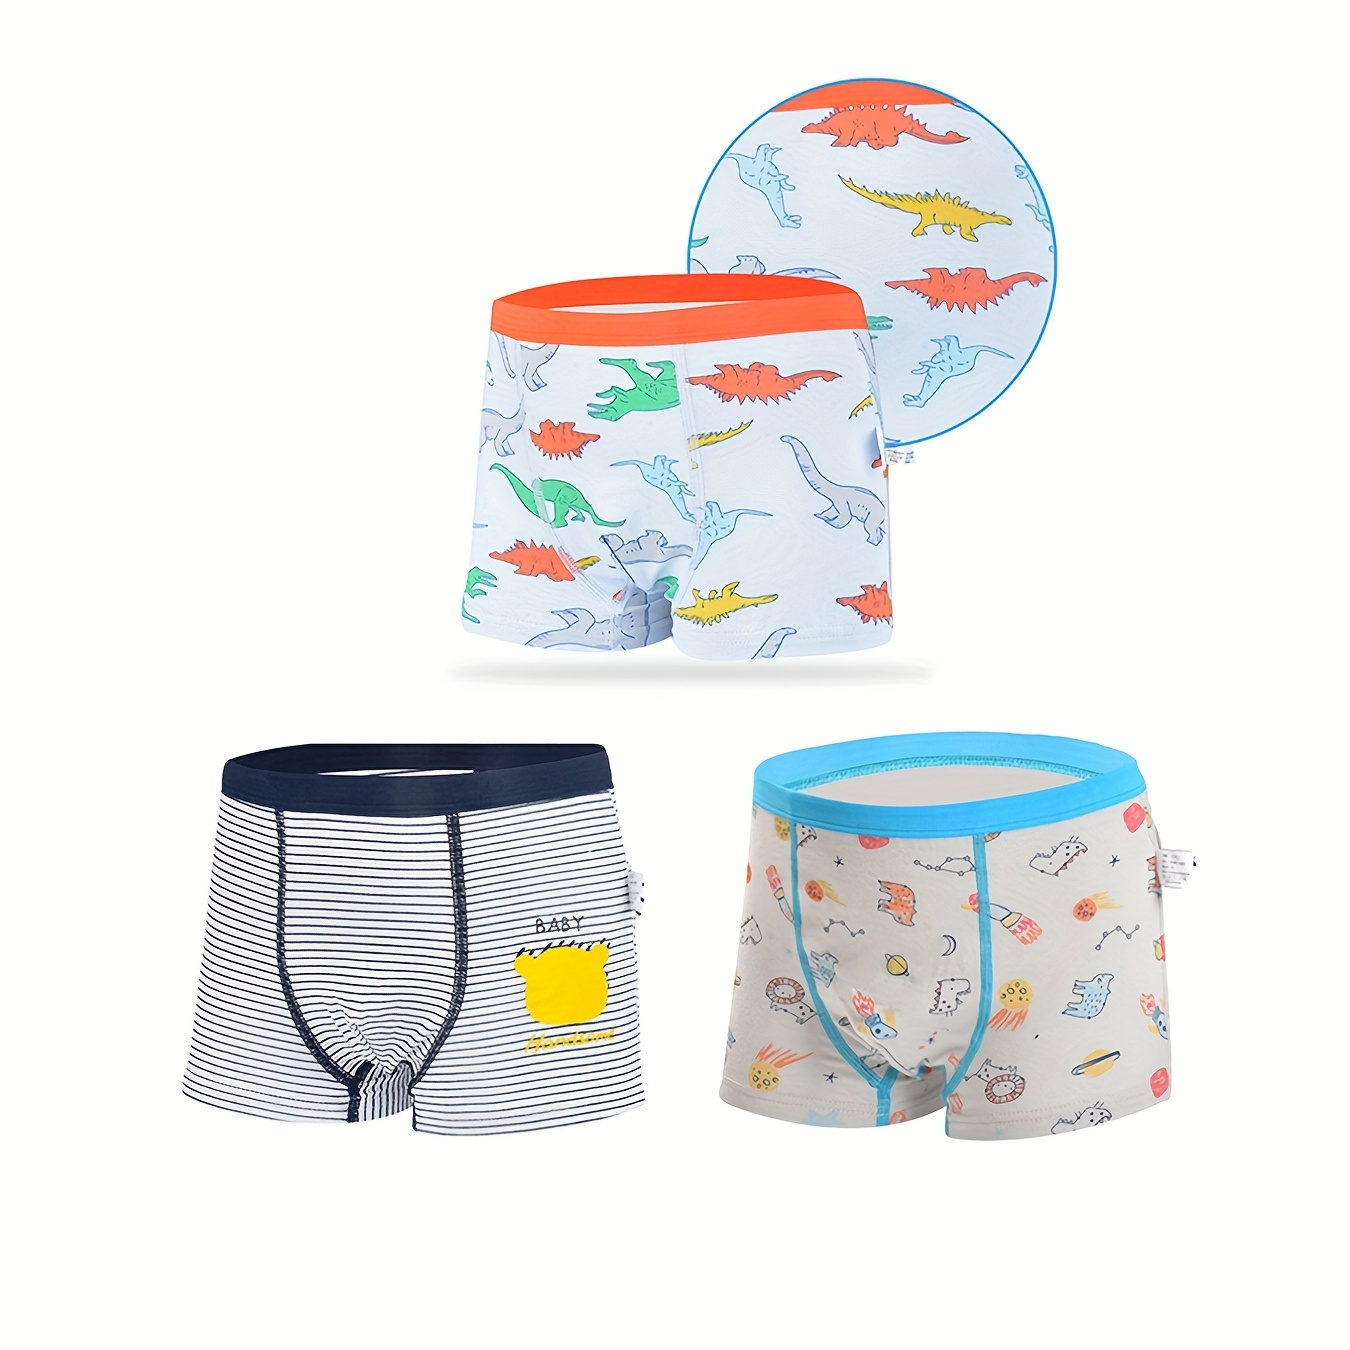 5pcs Boy's Breathable Boxer Briefs, Multiple Colors, Cartoon Pattern Cotton  Underwear, Comfy Kid's Underpants